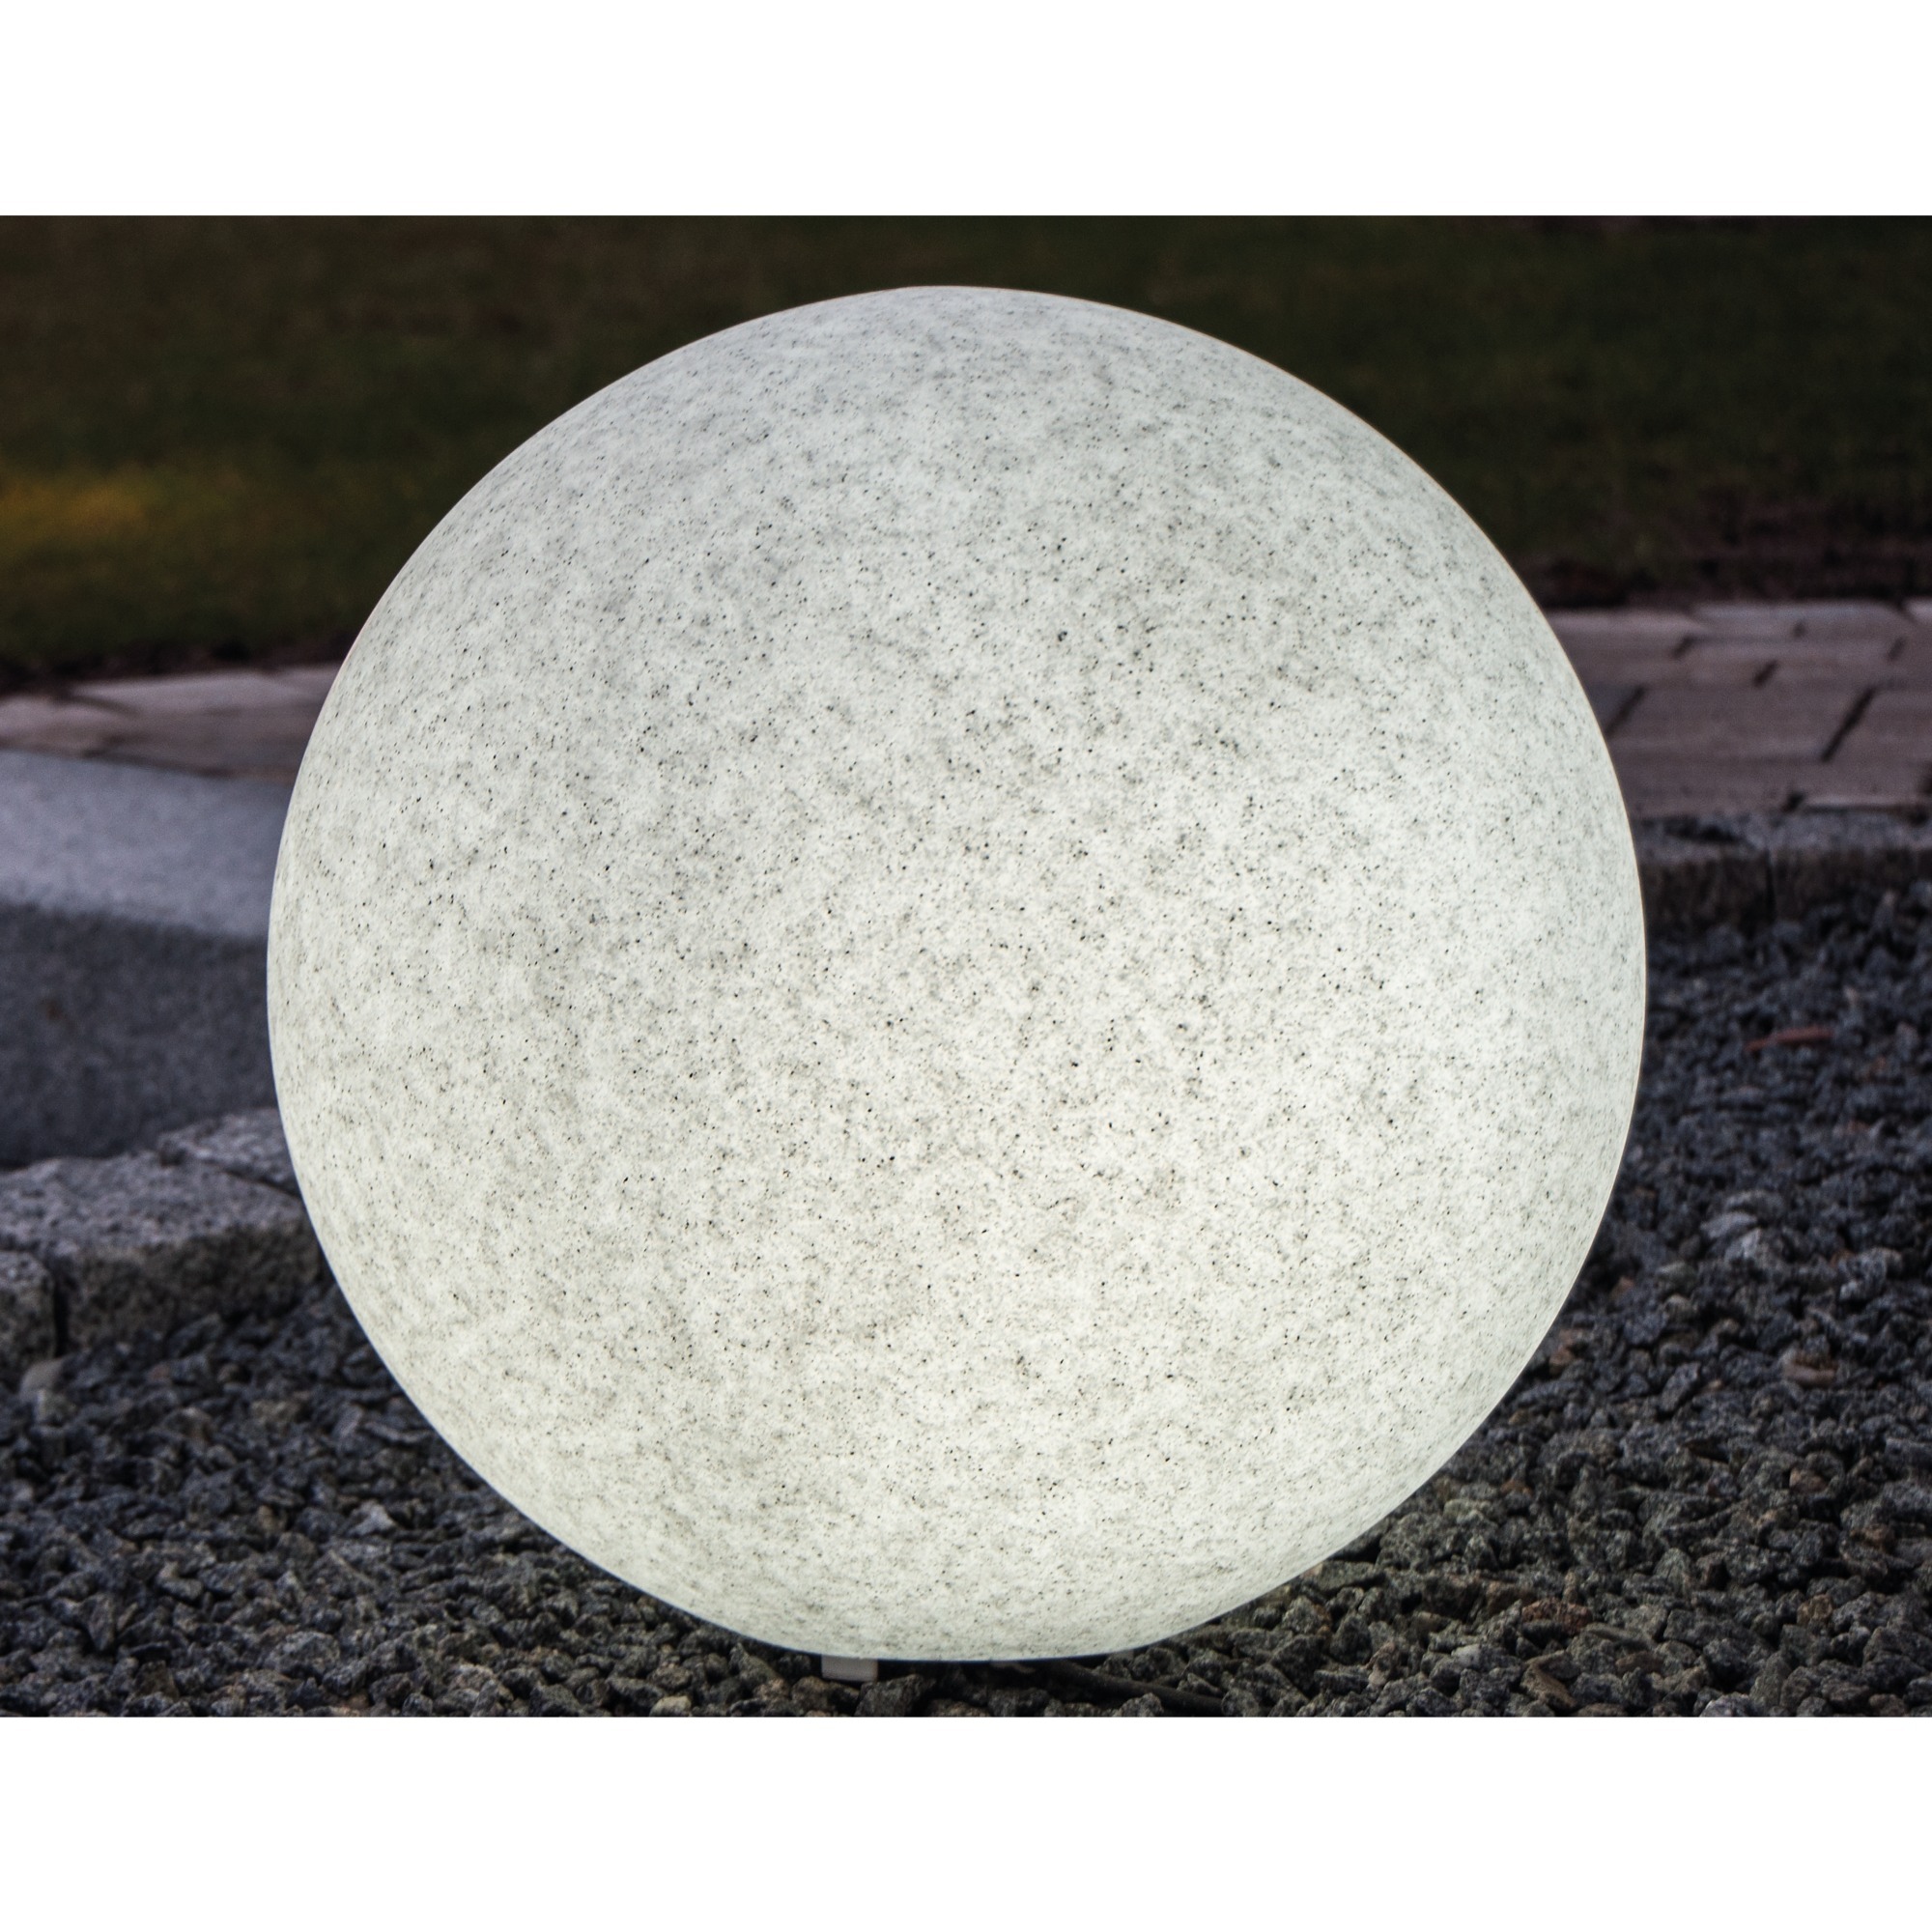 Image of Alternate - Leuchtkugel Mundan terra 500mm, Leuchte online einkaufen bei Alternate